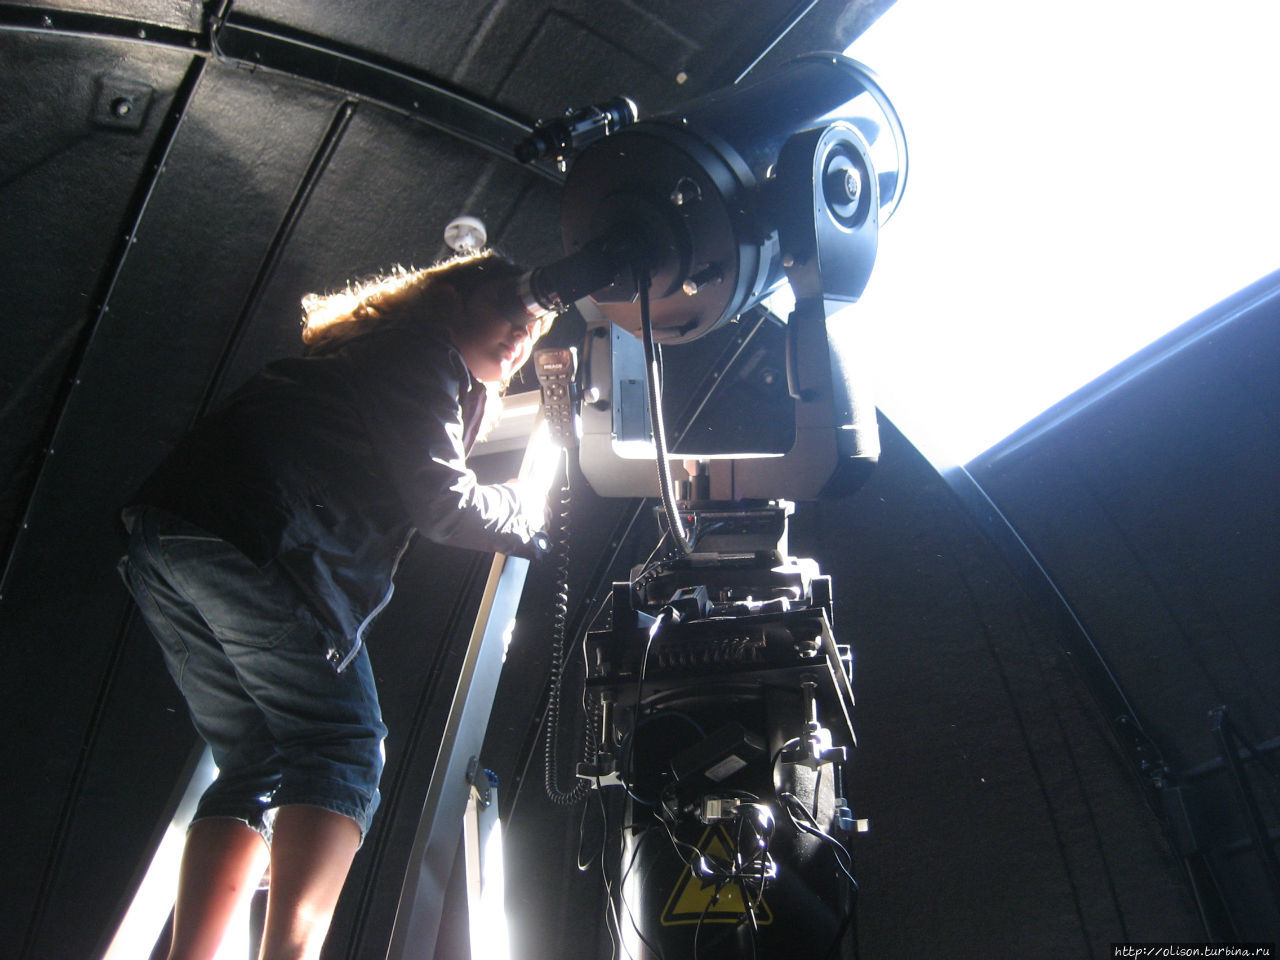 Солнечный телескоп Вентспилс, Латвия